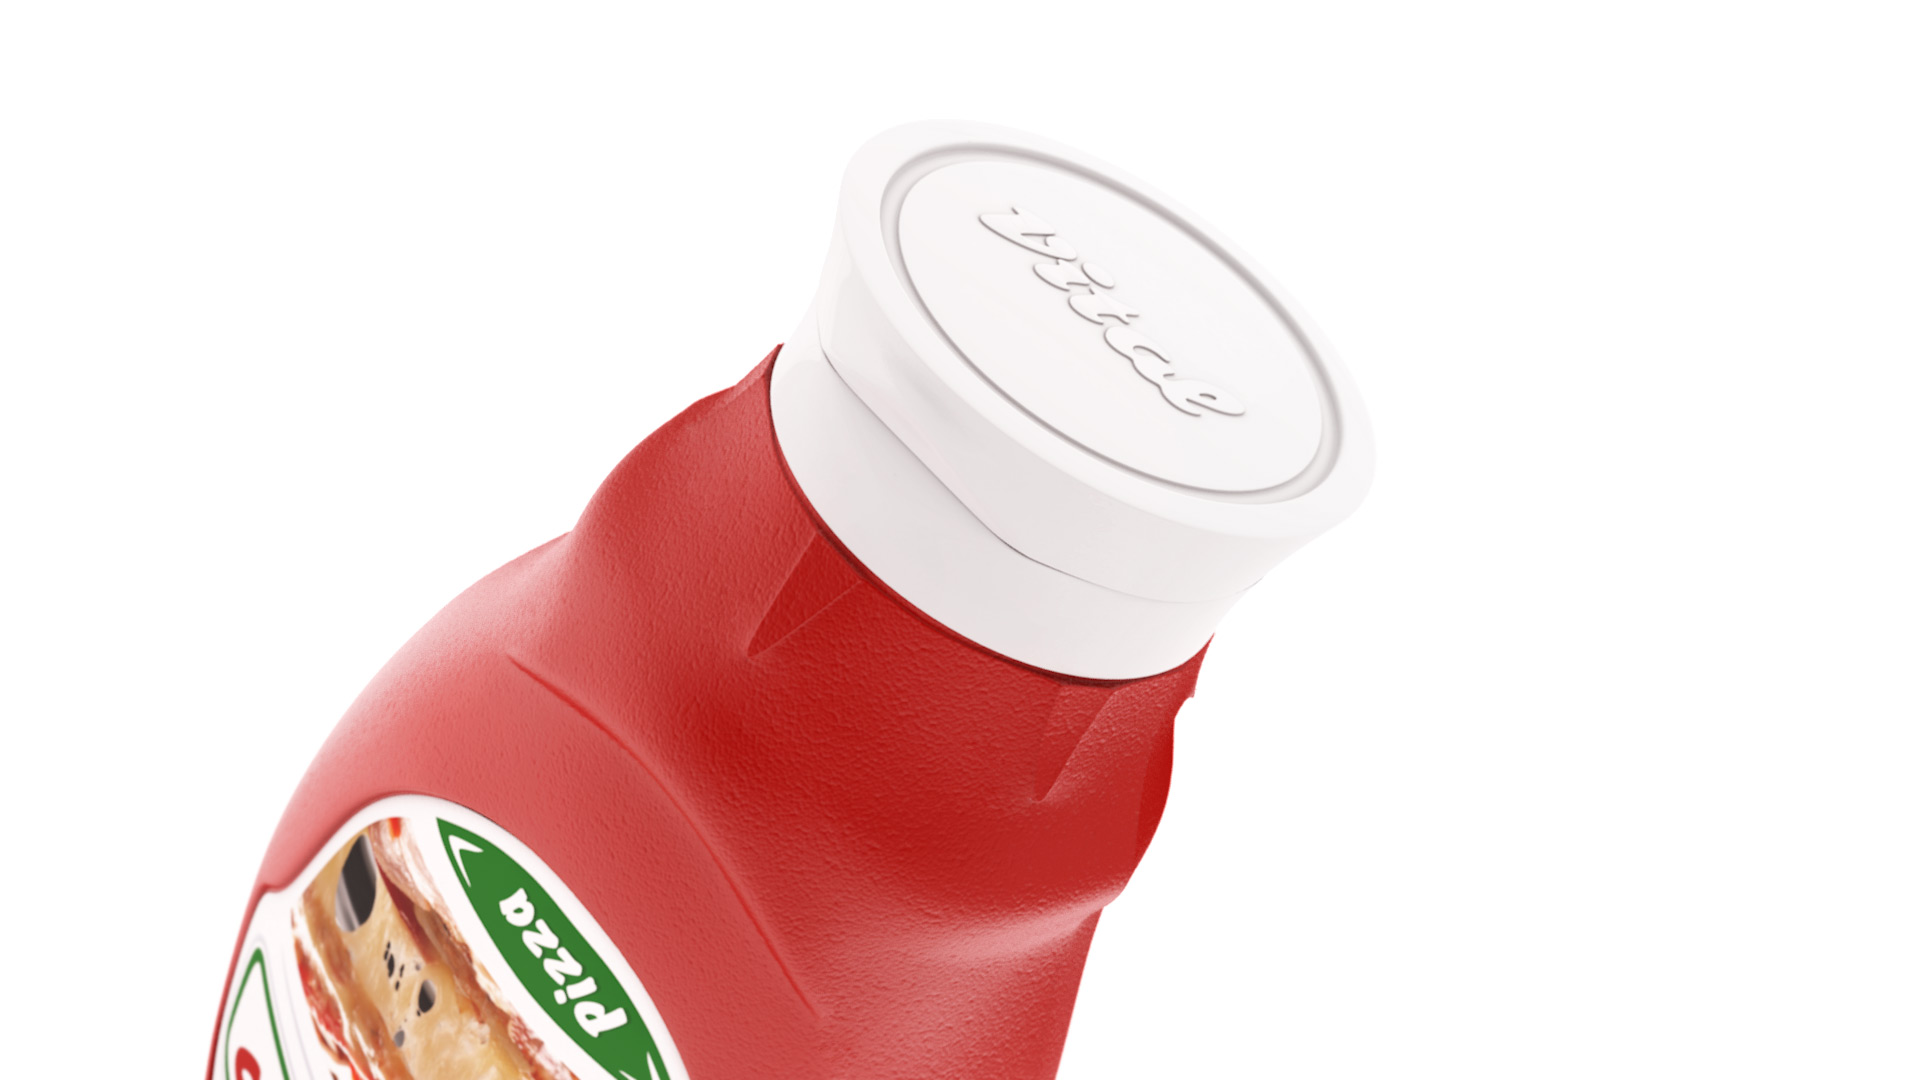 Vital tomato ketchup packaging design - plastic bottle cap